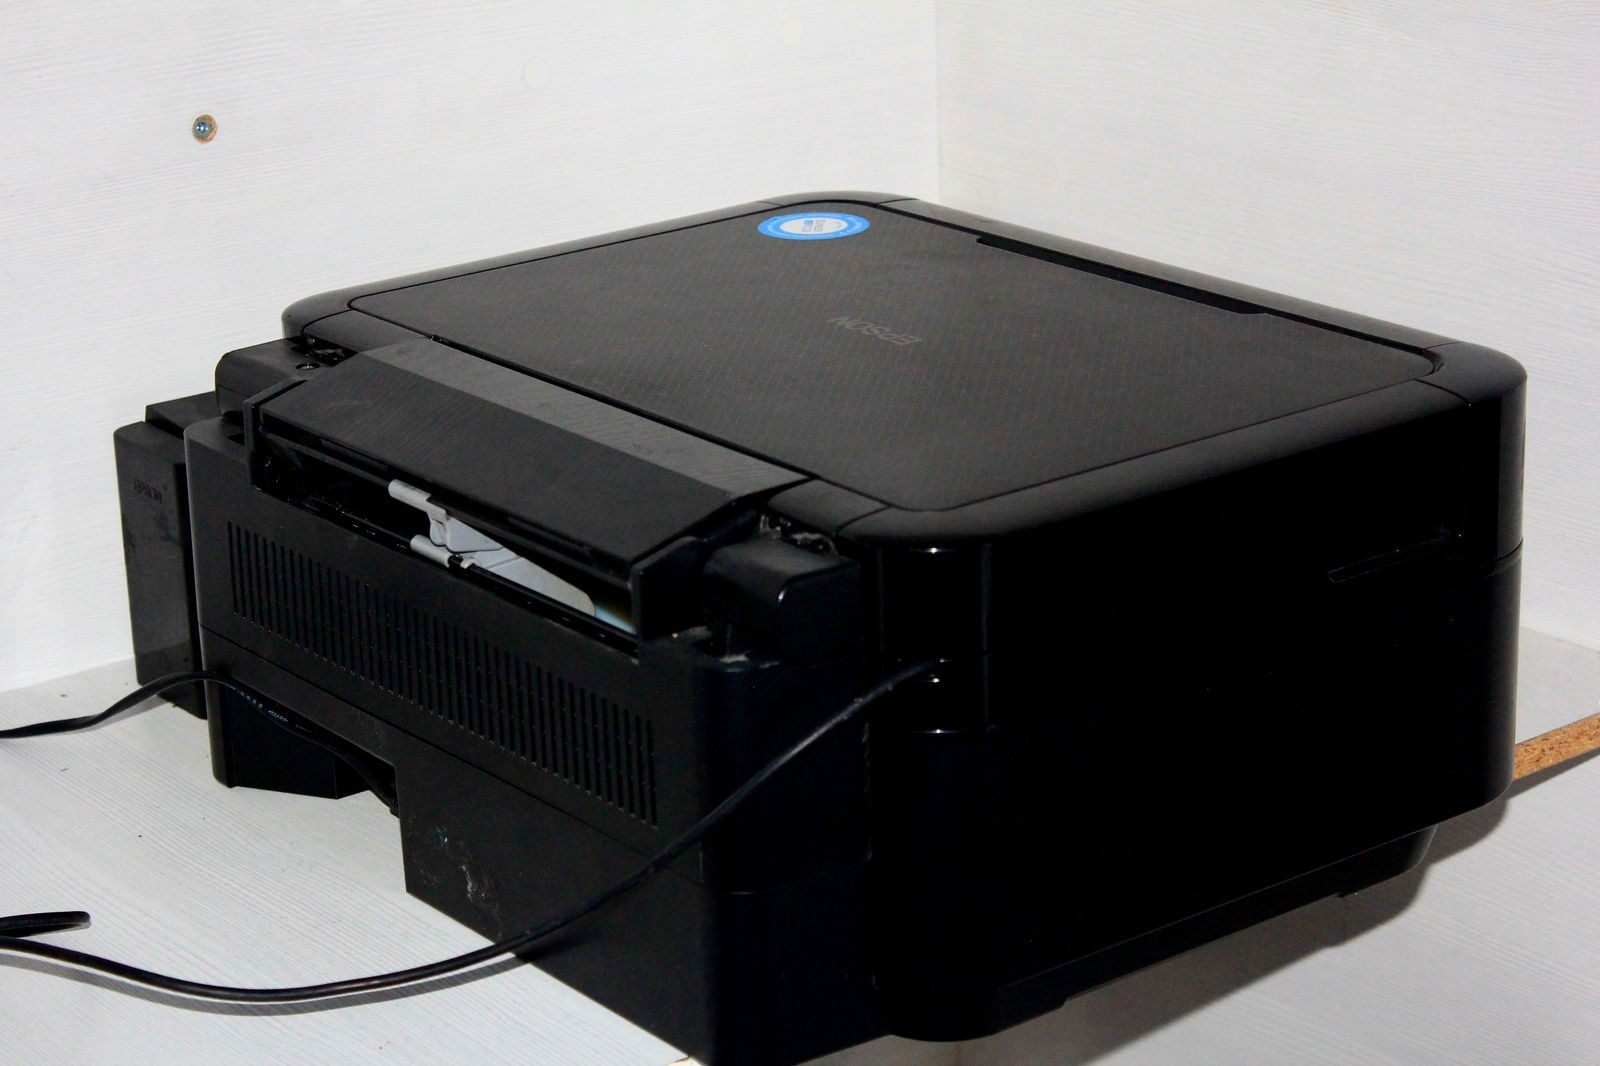 Принтер 3в1 Epson 850